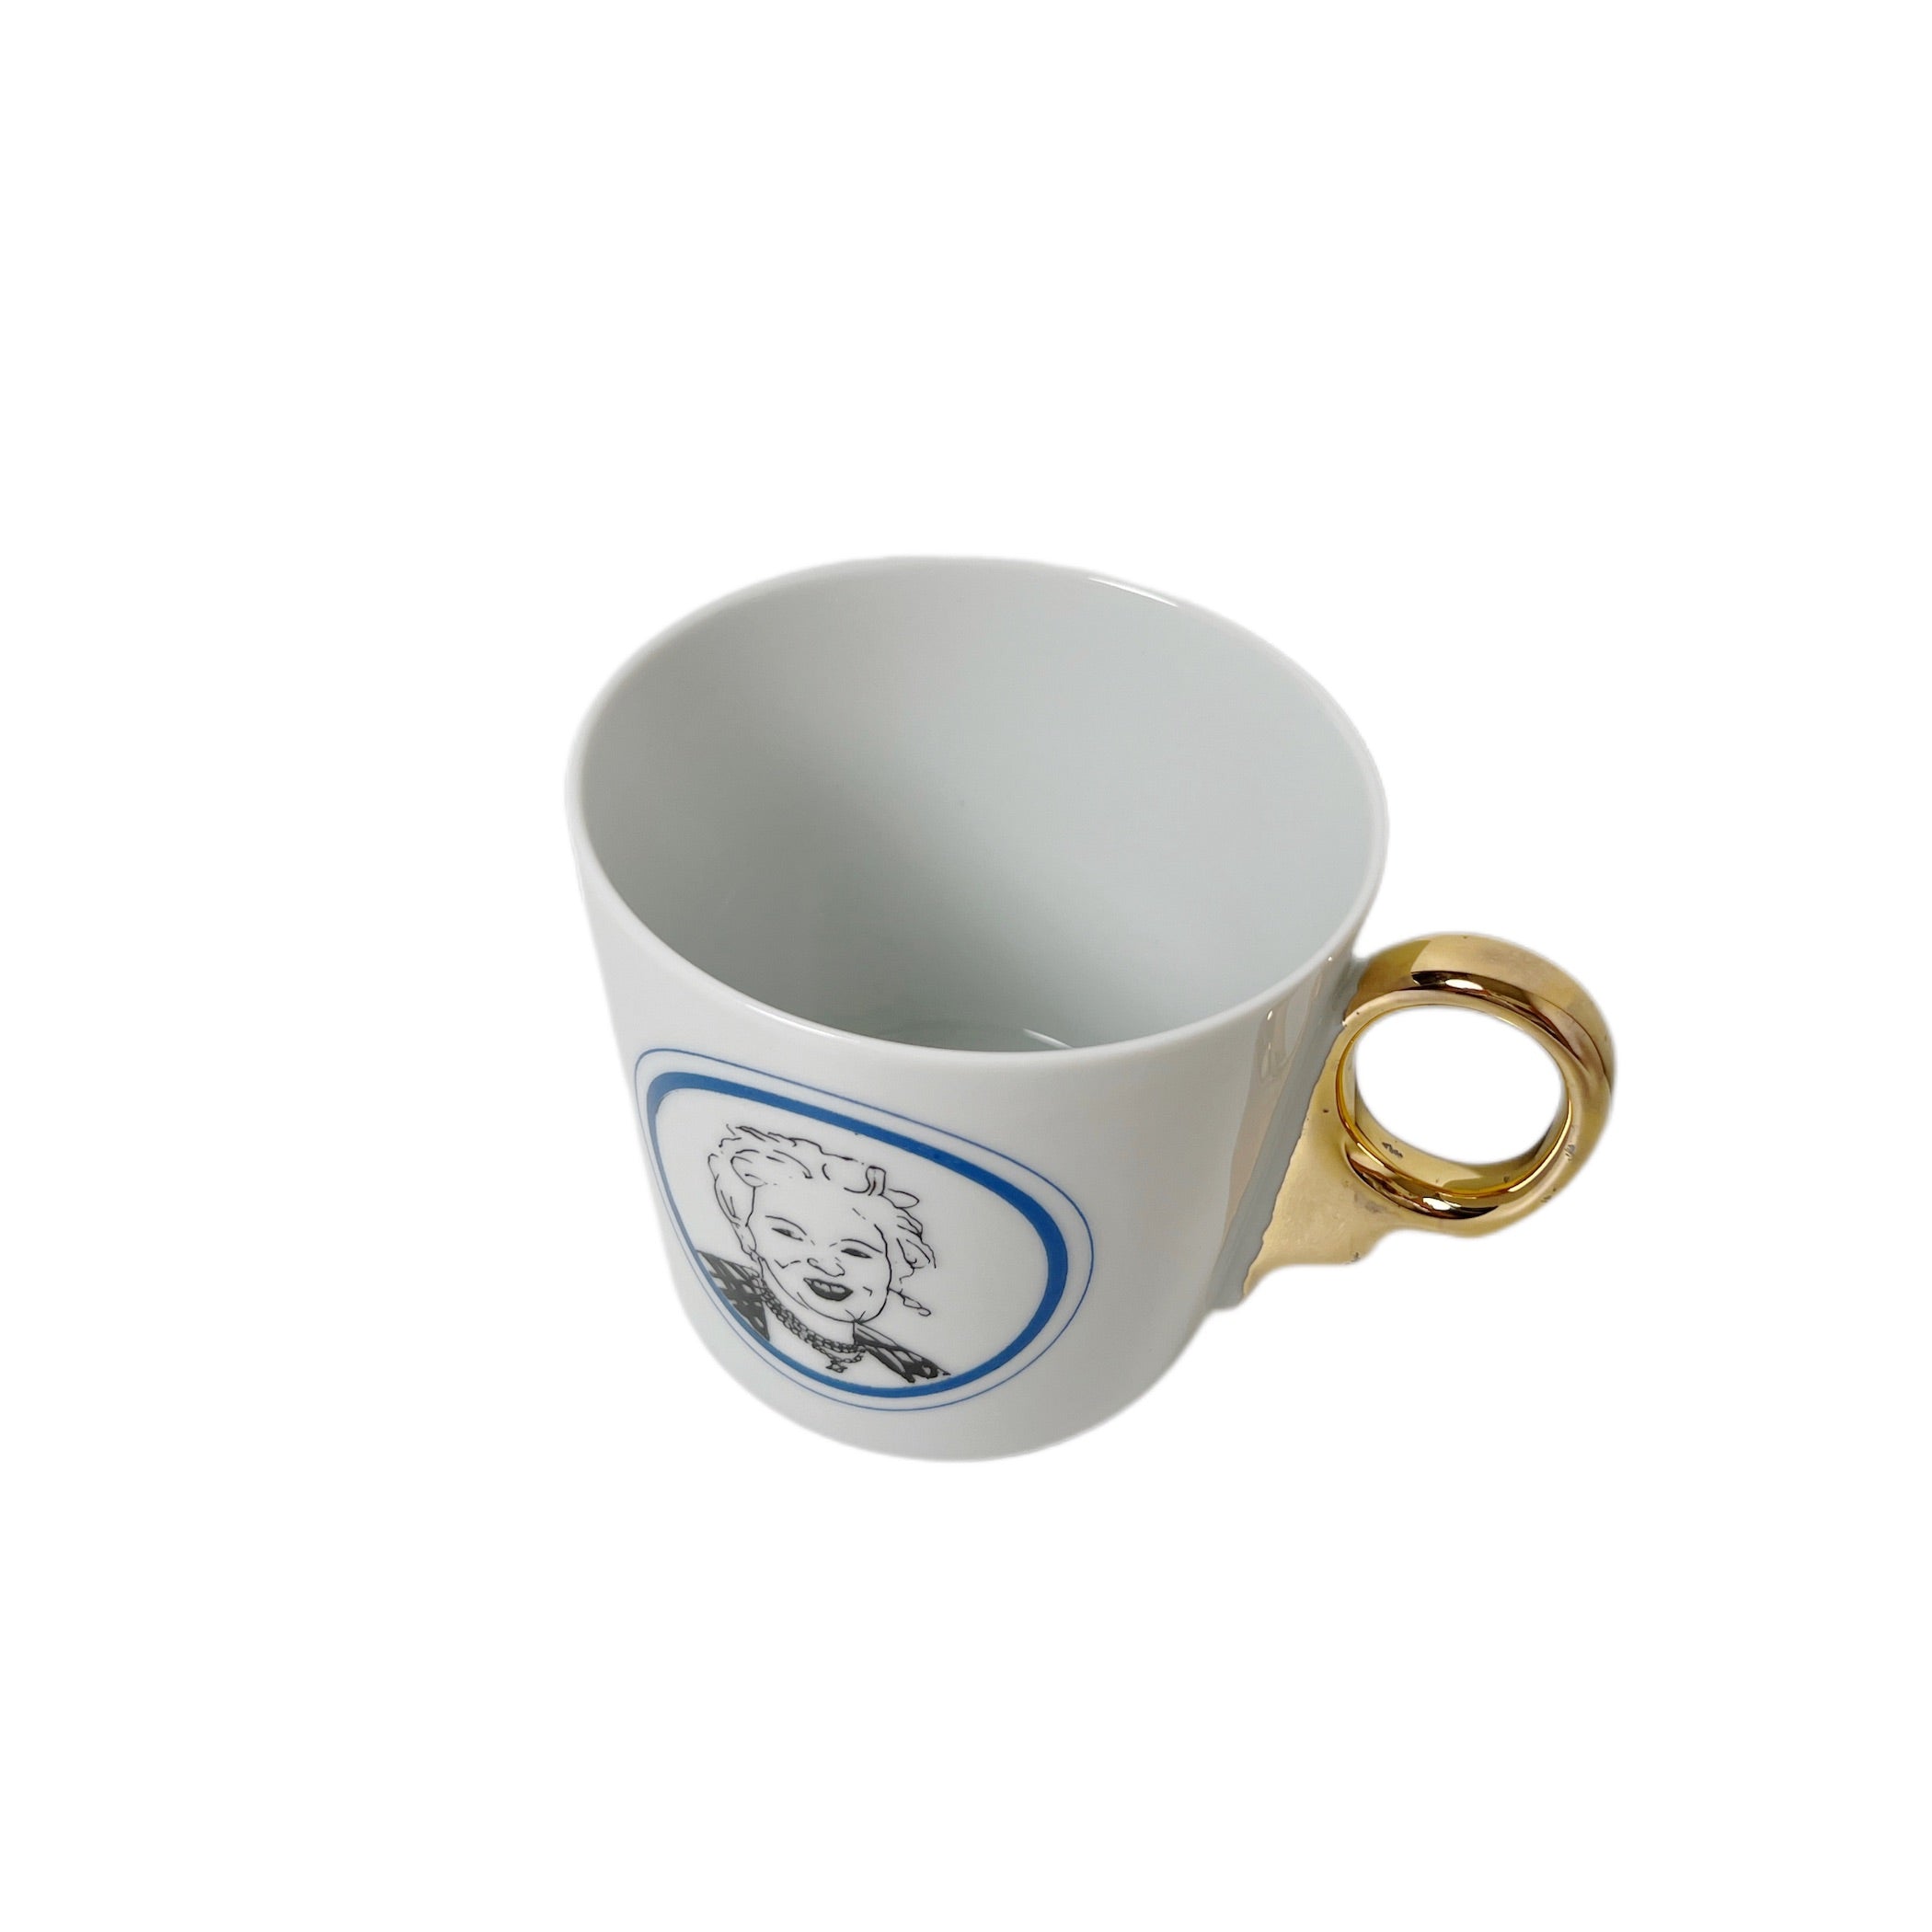 Kuhn Keramik】Vivienne Westwood Panth_on cup | フィールシーン